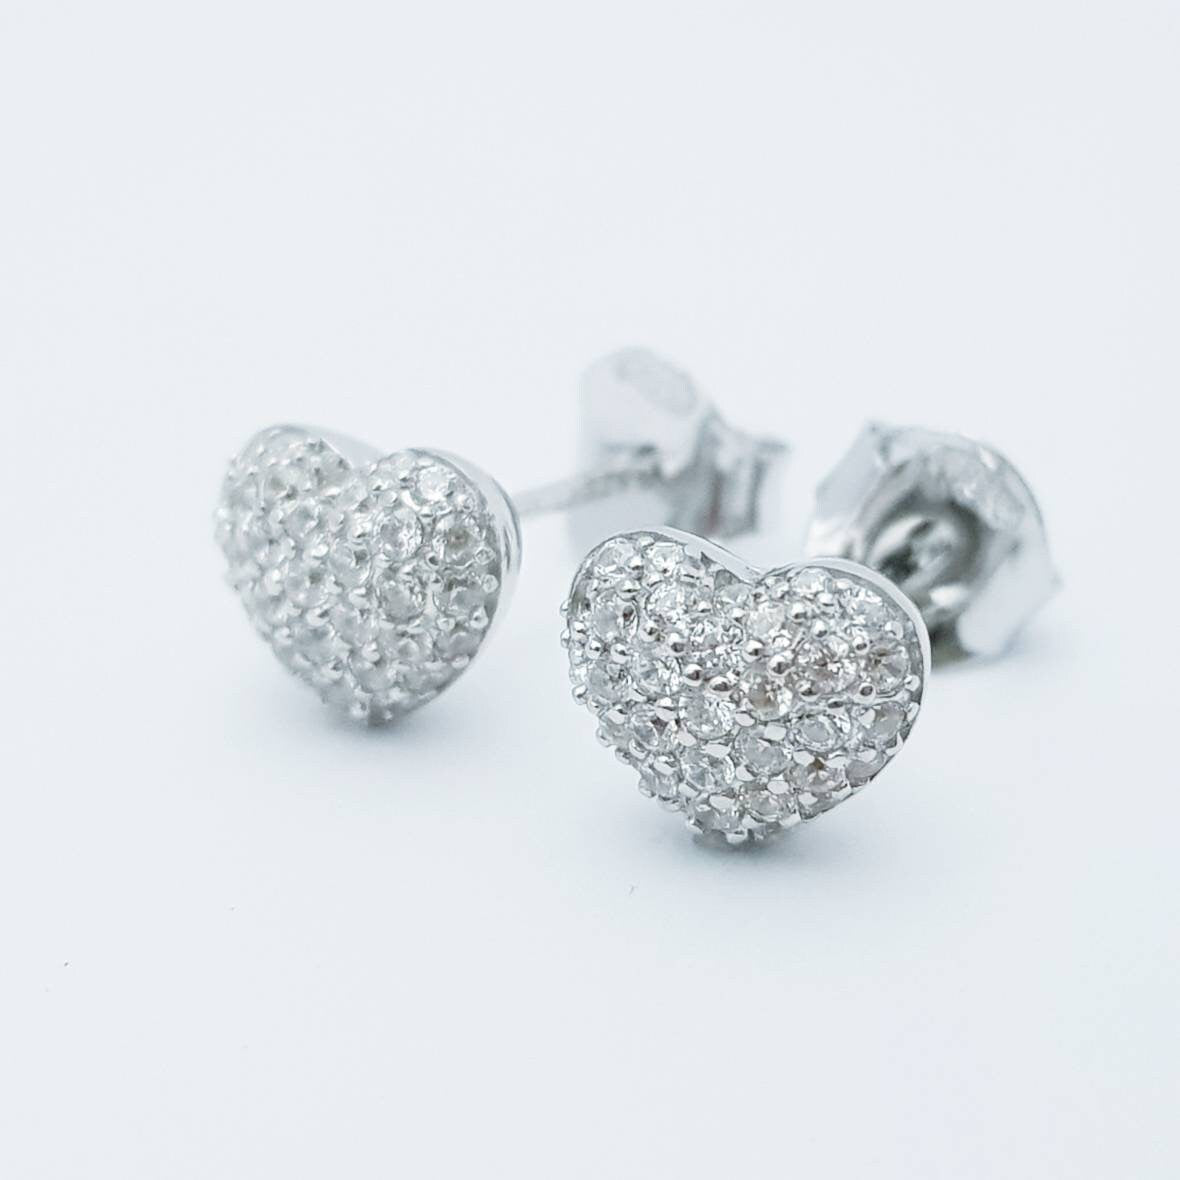 Dainty Sterling silver heart shaped stud earrings, cute faux diamond heart earrings